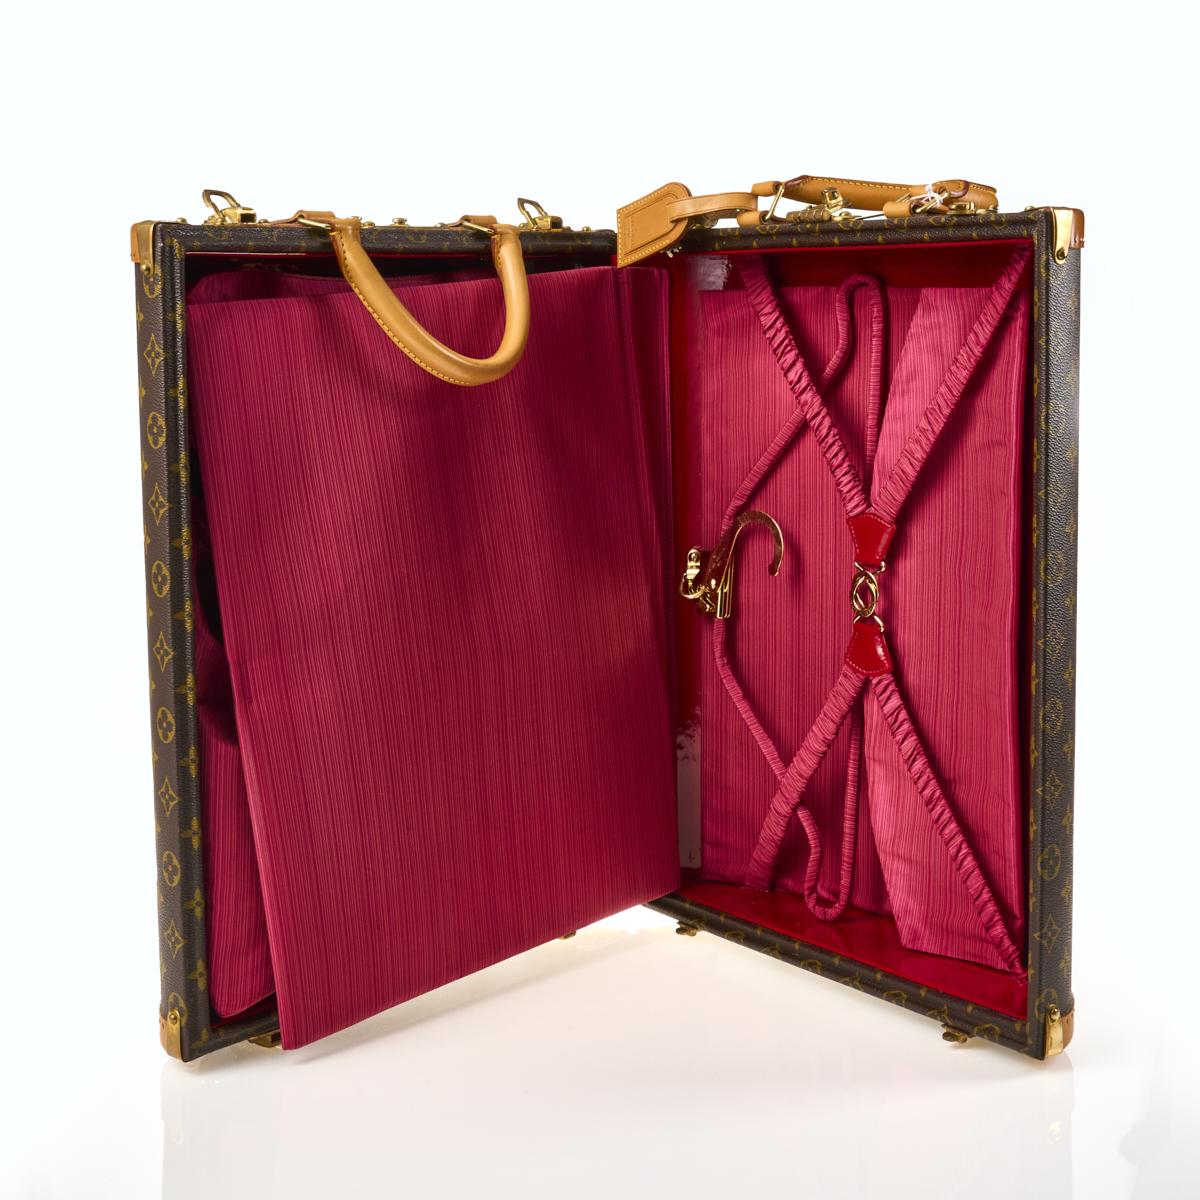 Sold at Auction: Louis Vuitton, Louis Vuitton: a Monogram Gemine